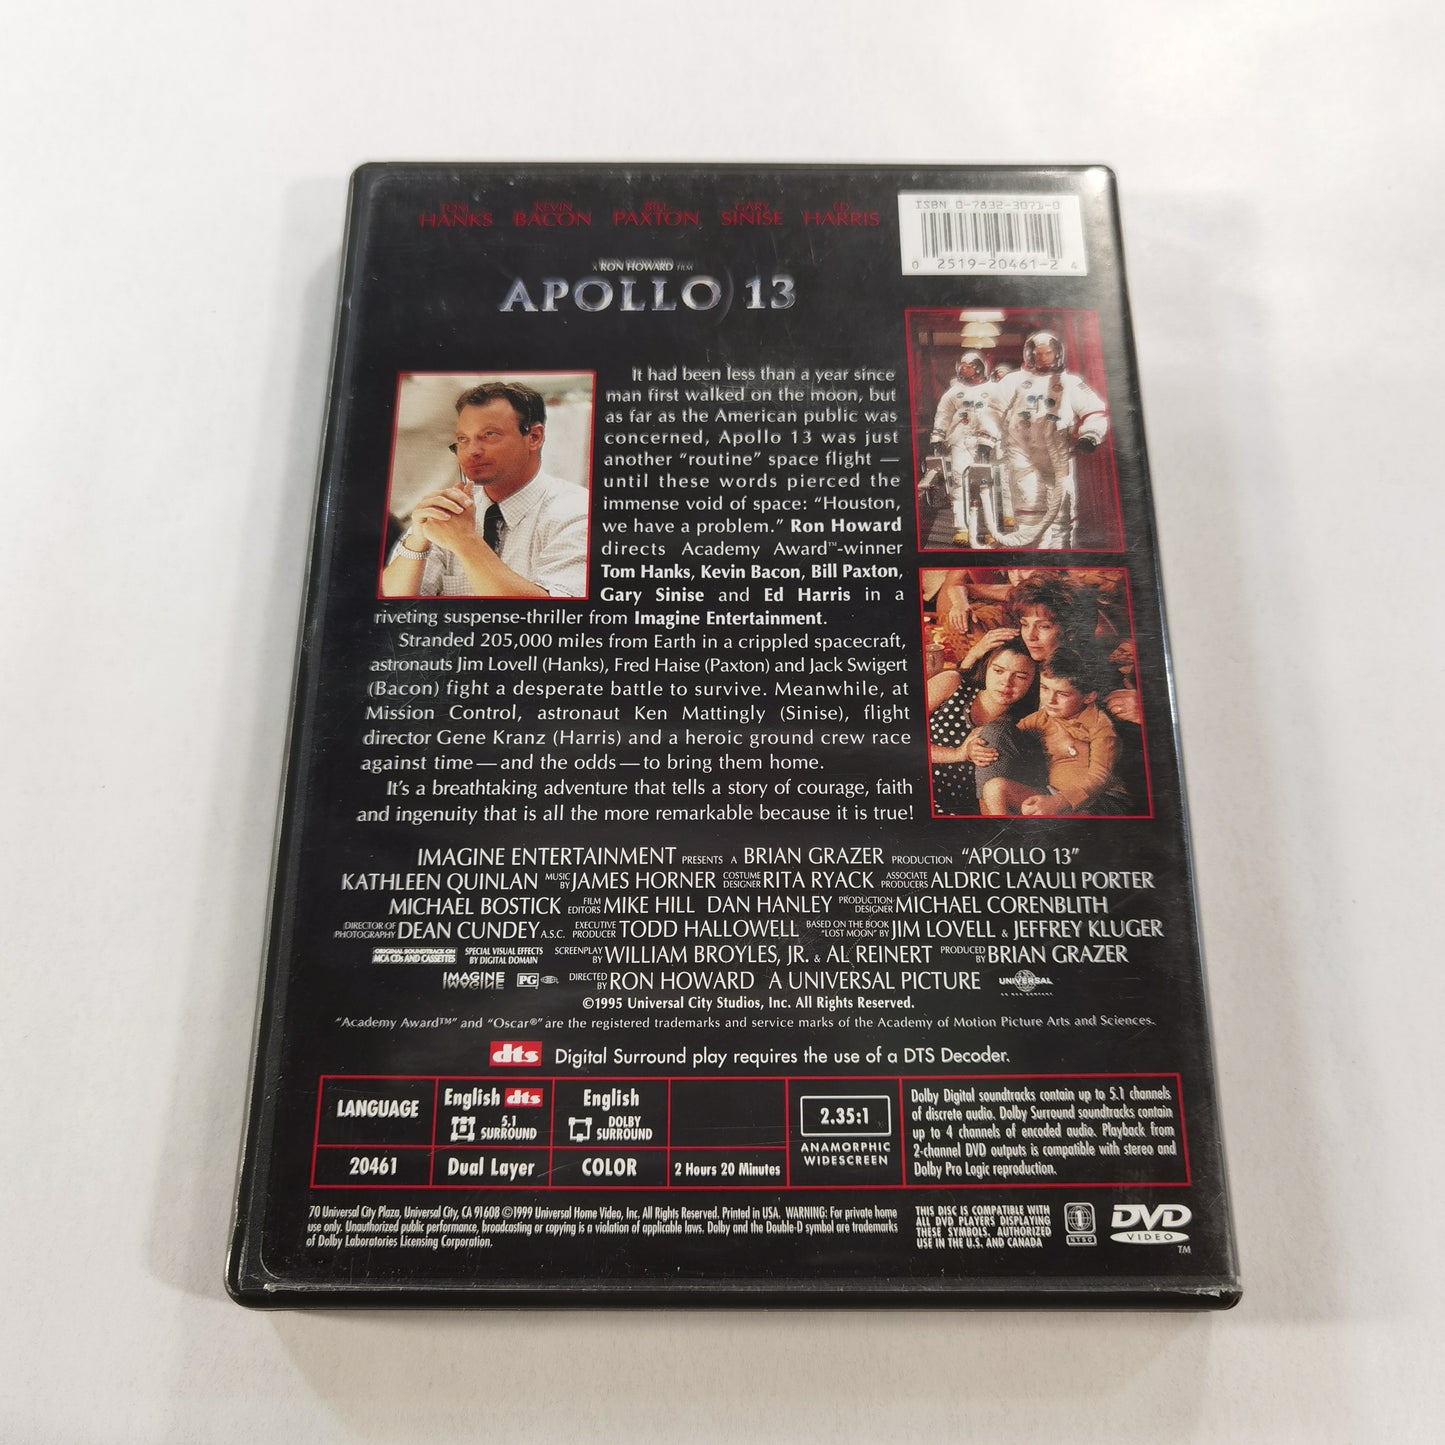 Apollo 13 (1995) - DVD US 1999 Widescreen